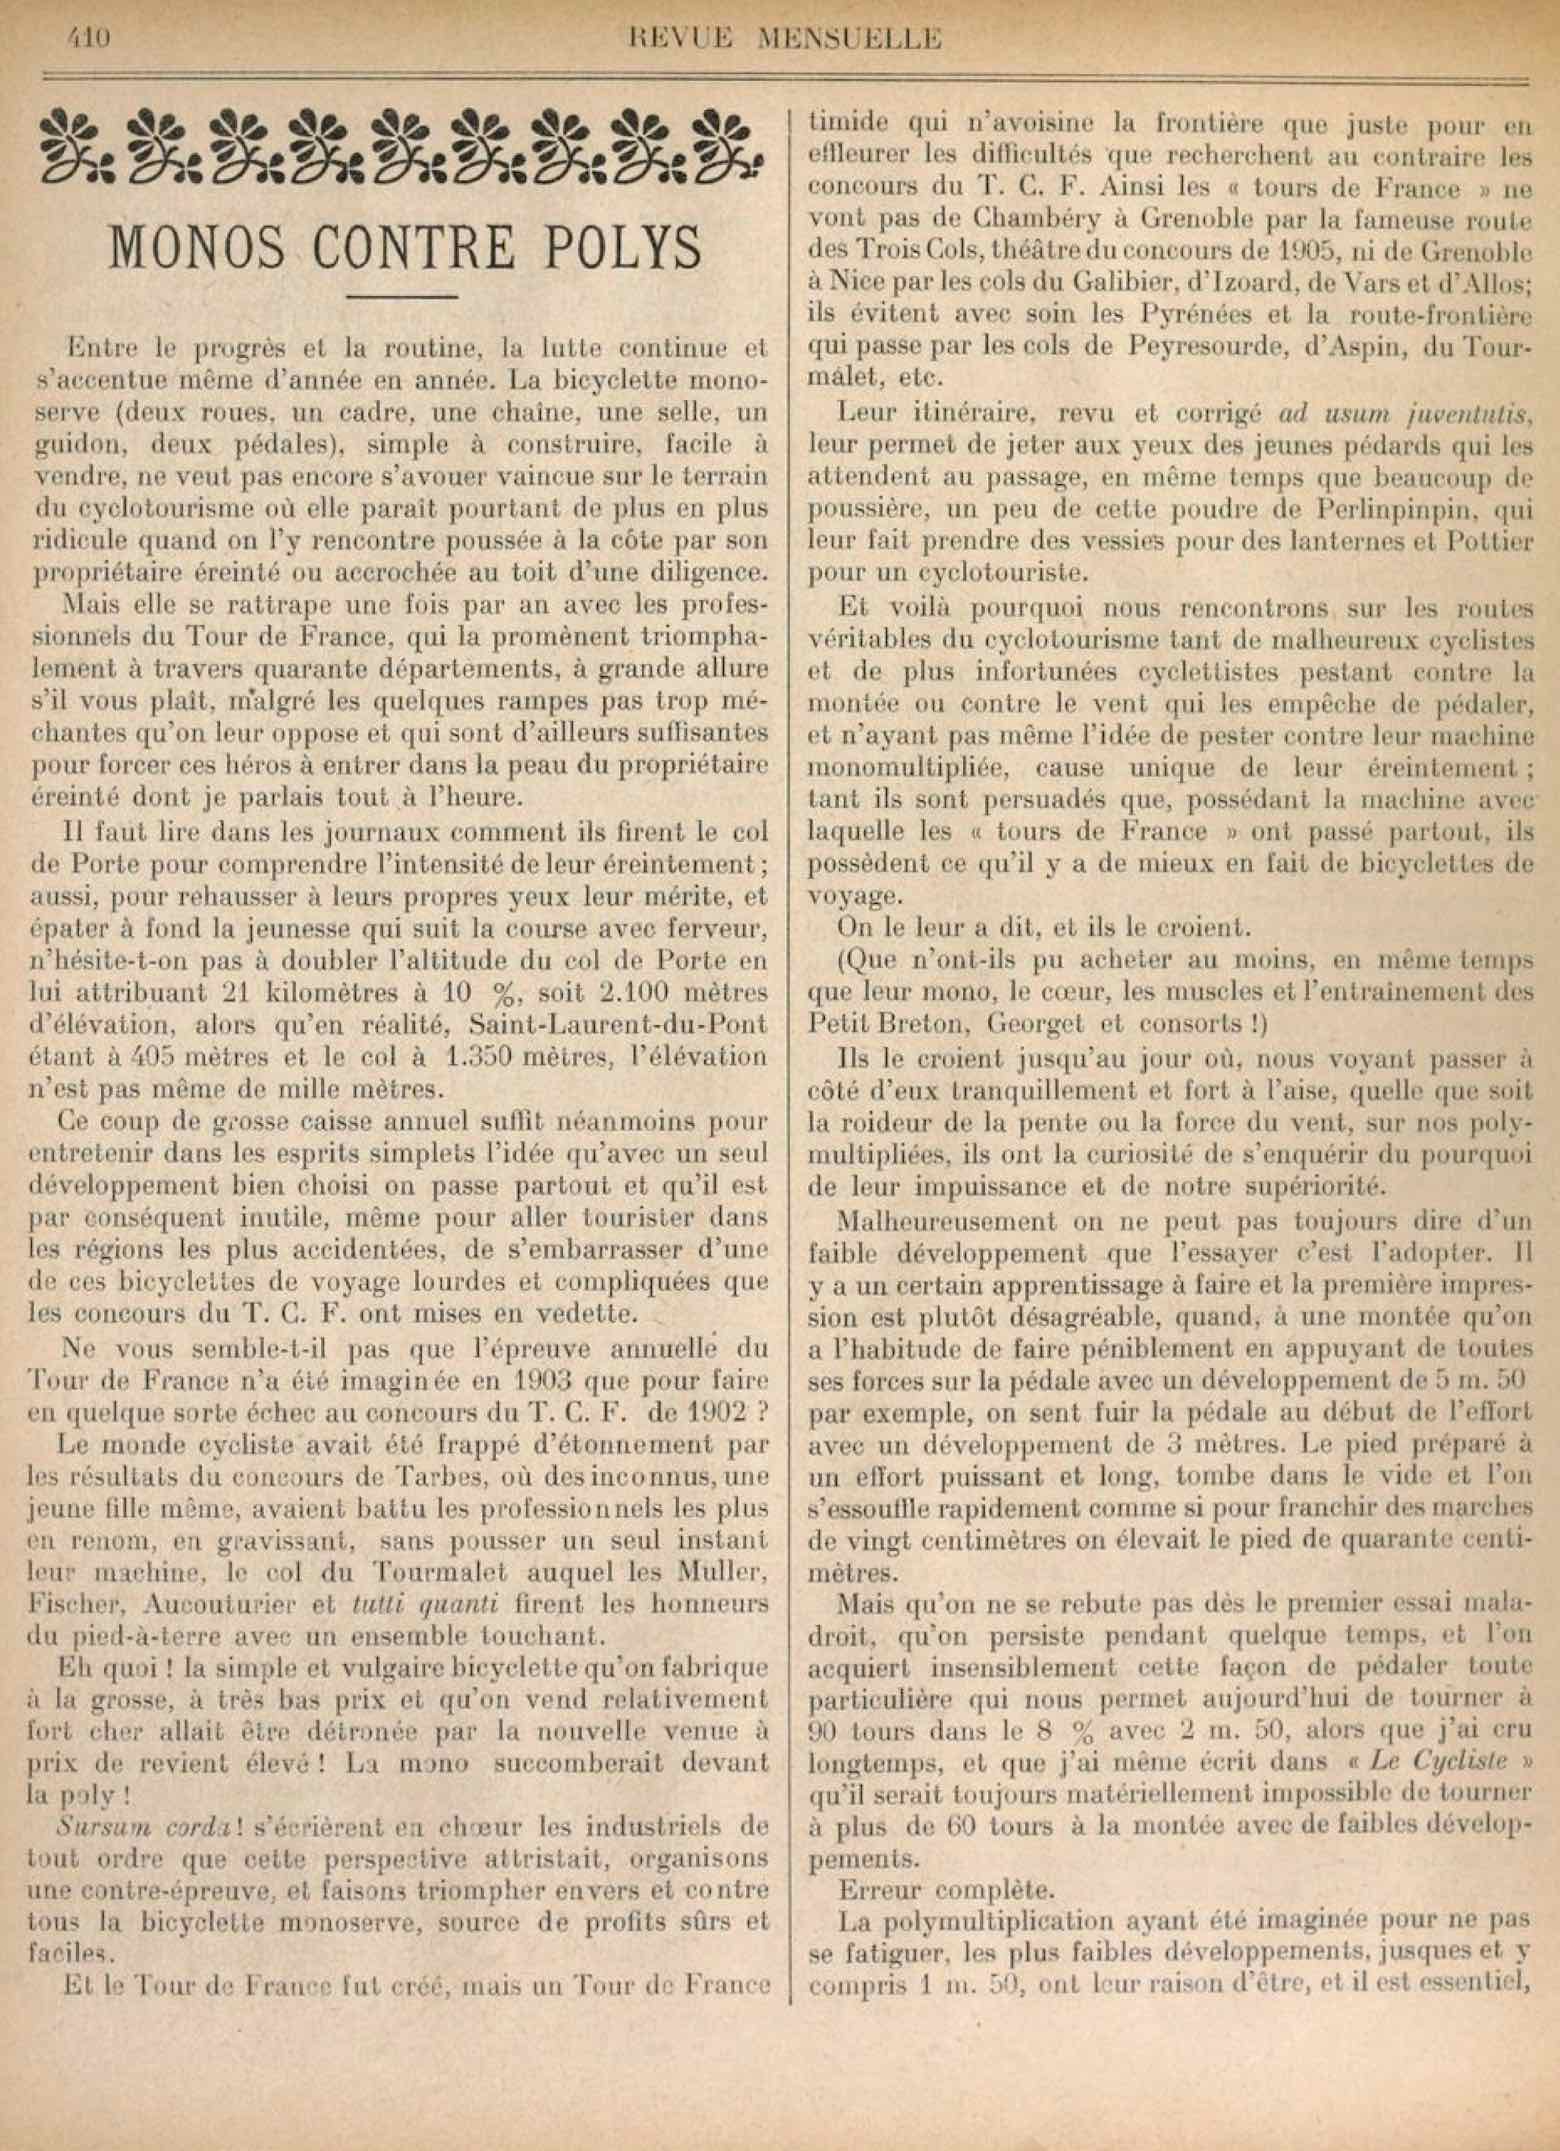 T.C.F. Revue Mensuelle September 1907 - Monos Contre Polys scan 1 main image